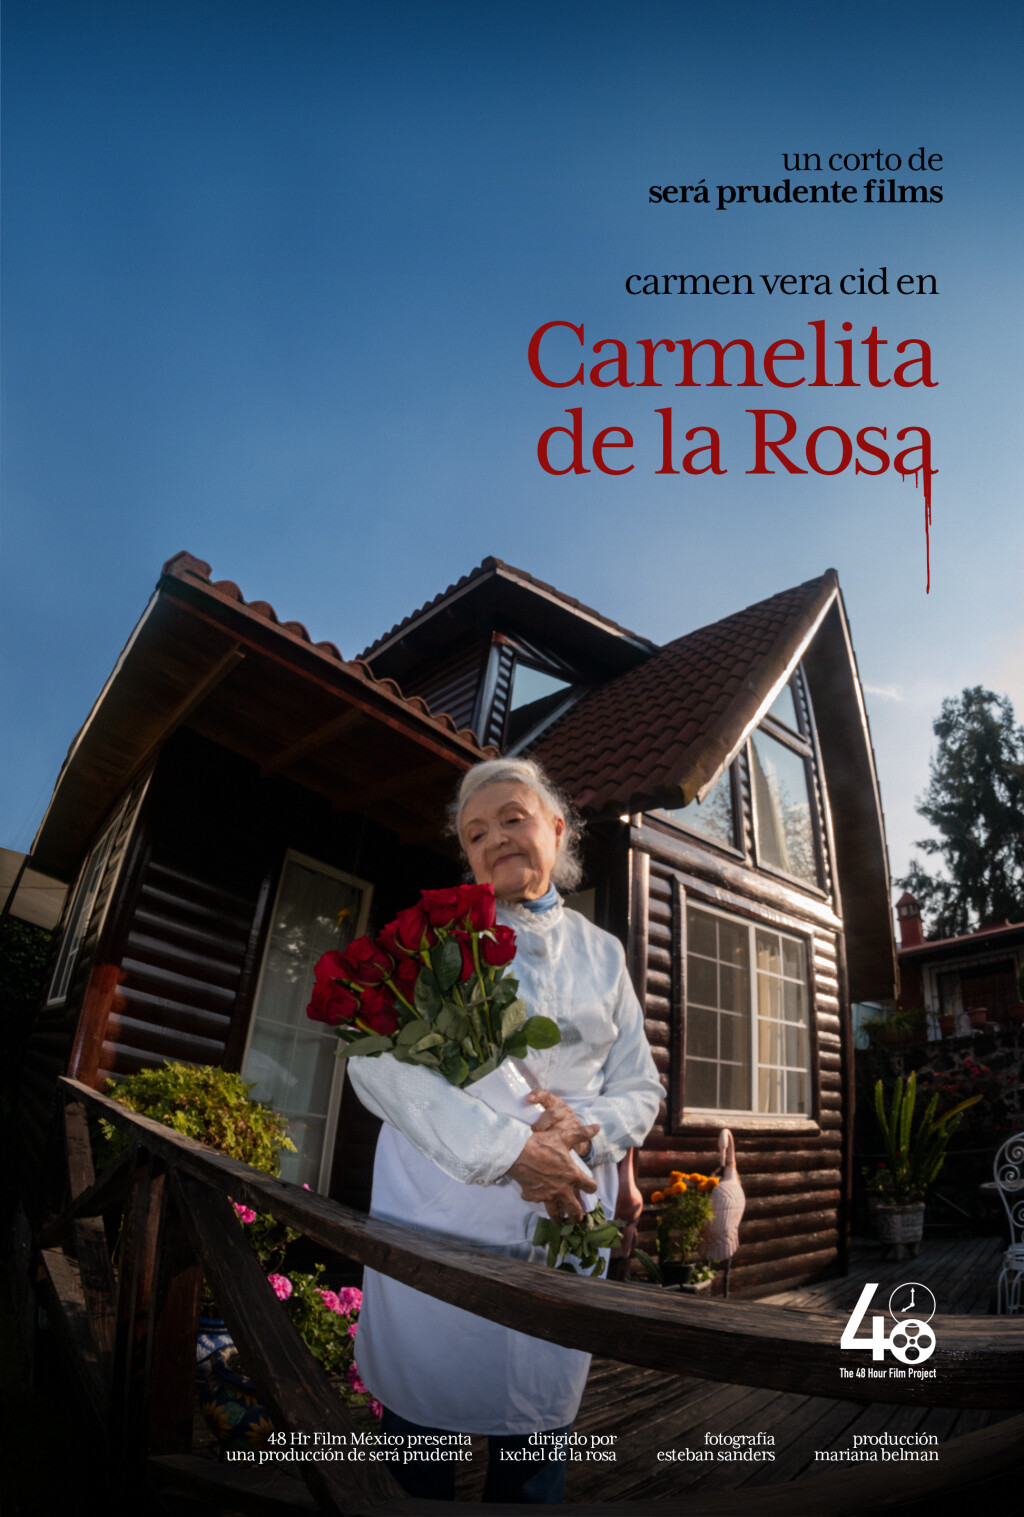 Filmposter for Carmelita de la Rosa